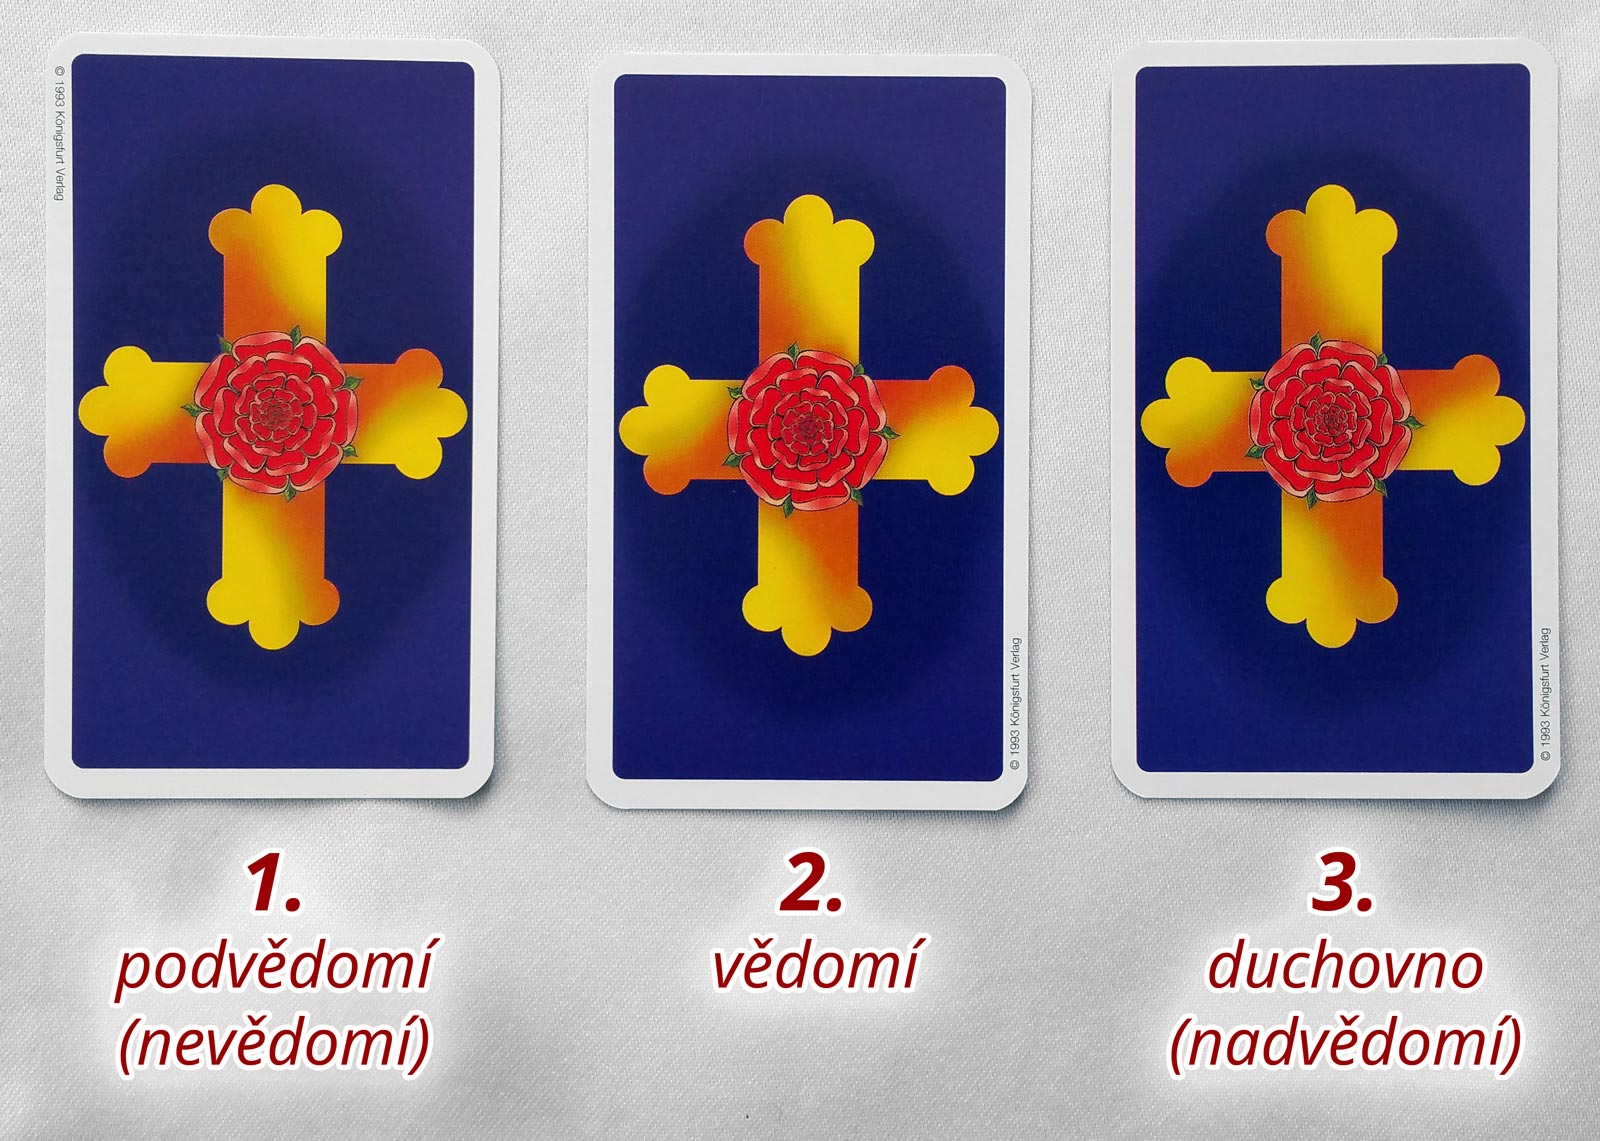 Tři karty: Podvědomí (nevědomí); Vědomí; Duchovno (nadvědomí)